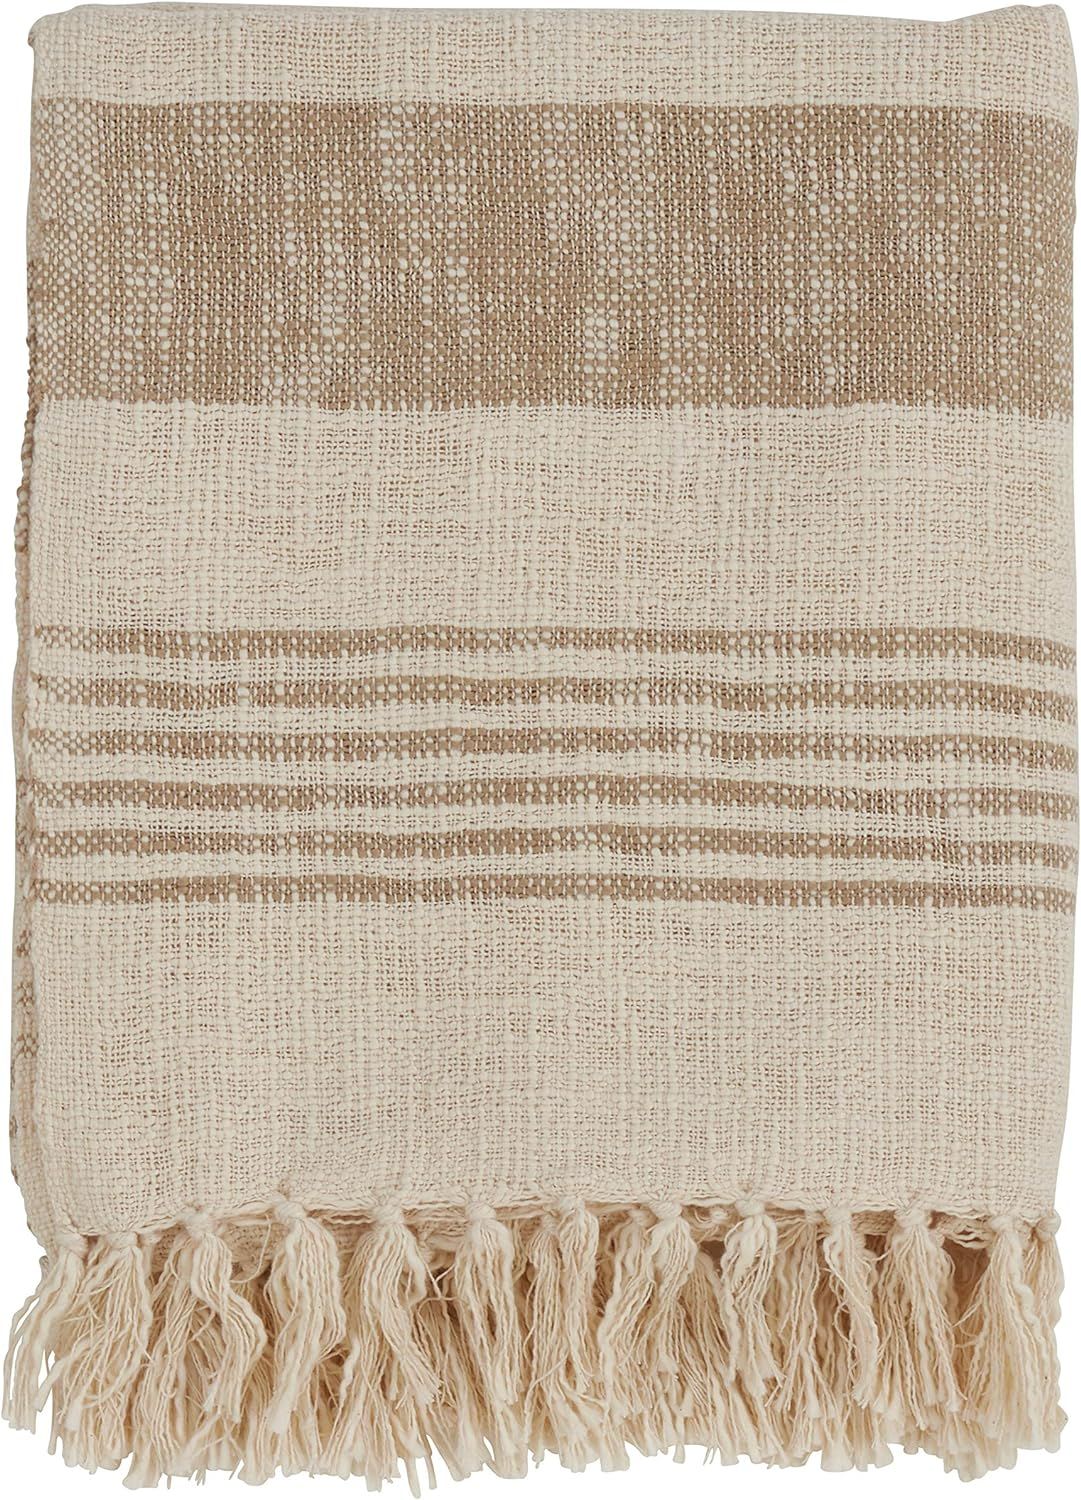 SARO LIFESTYLE Cotton Throw with Striped and Tasseled Design | Amazon (US)